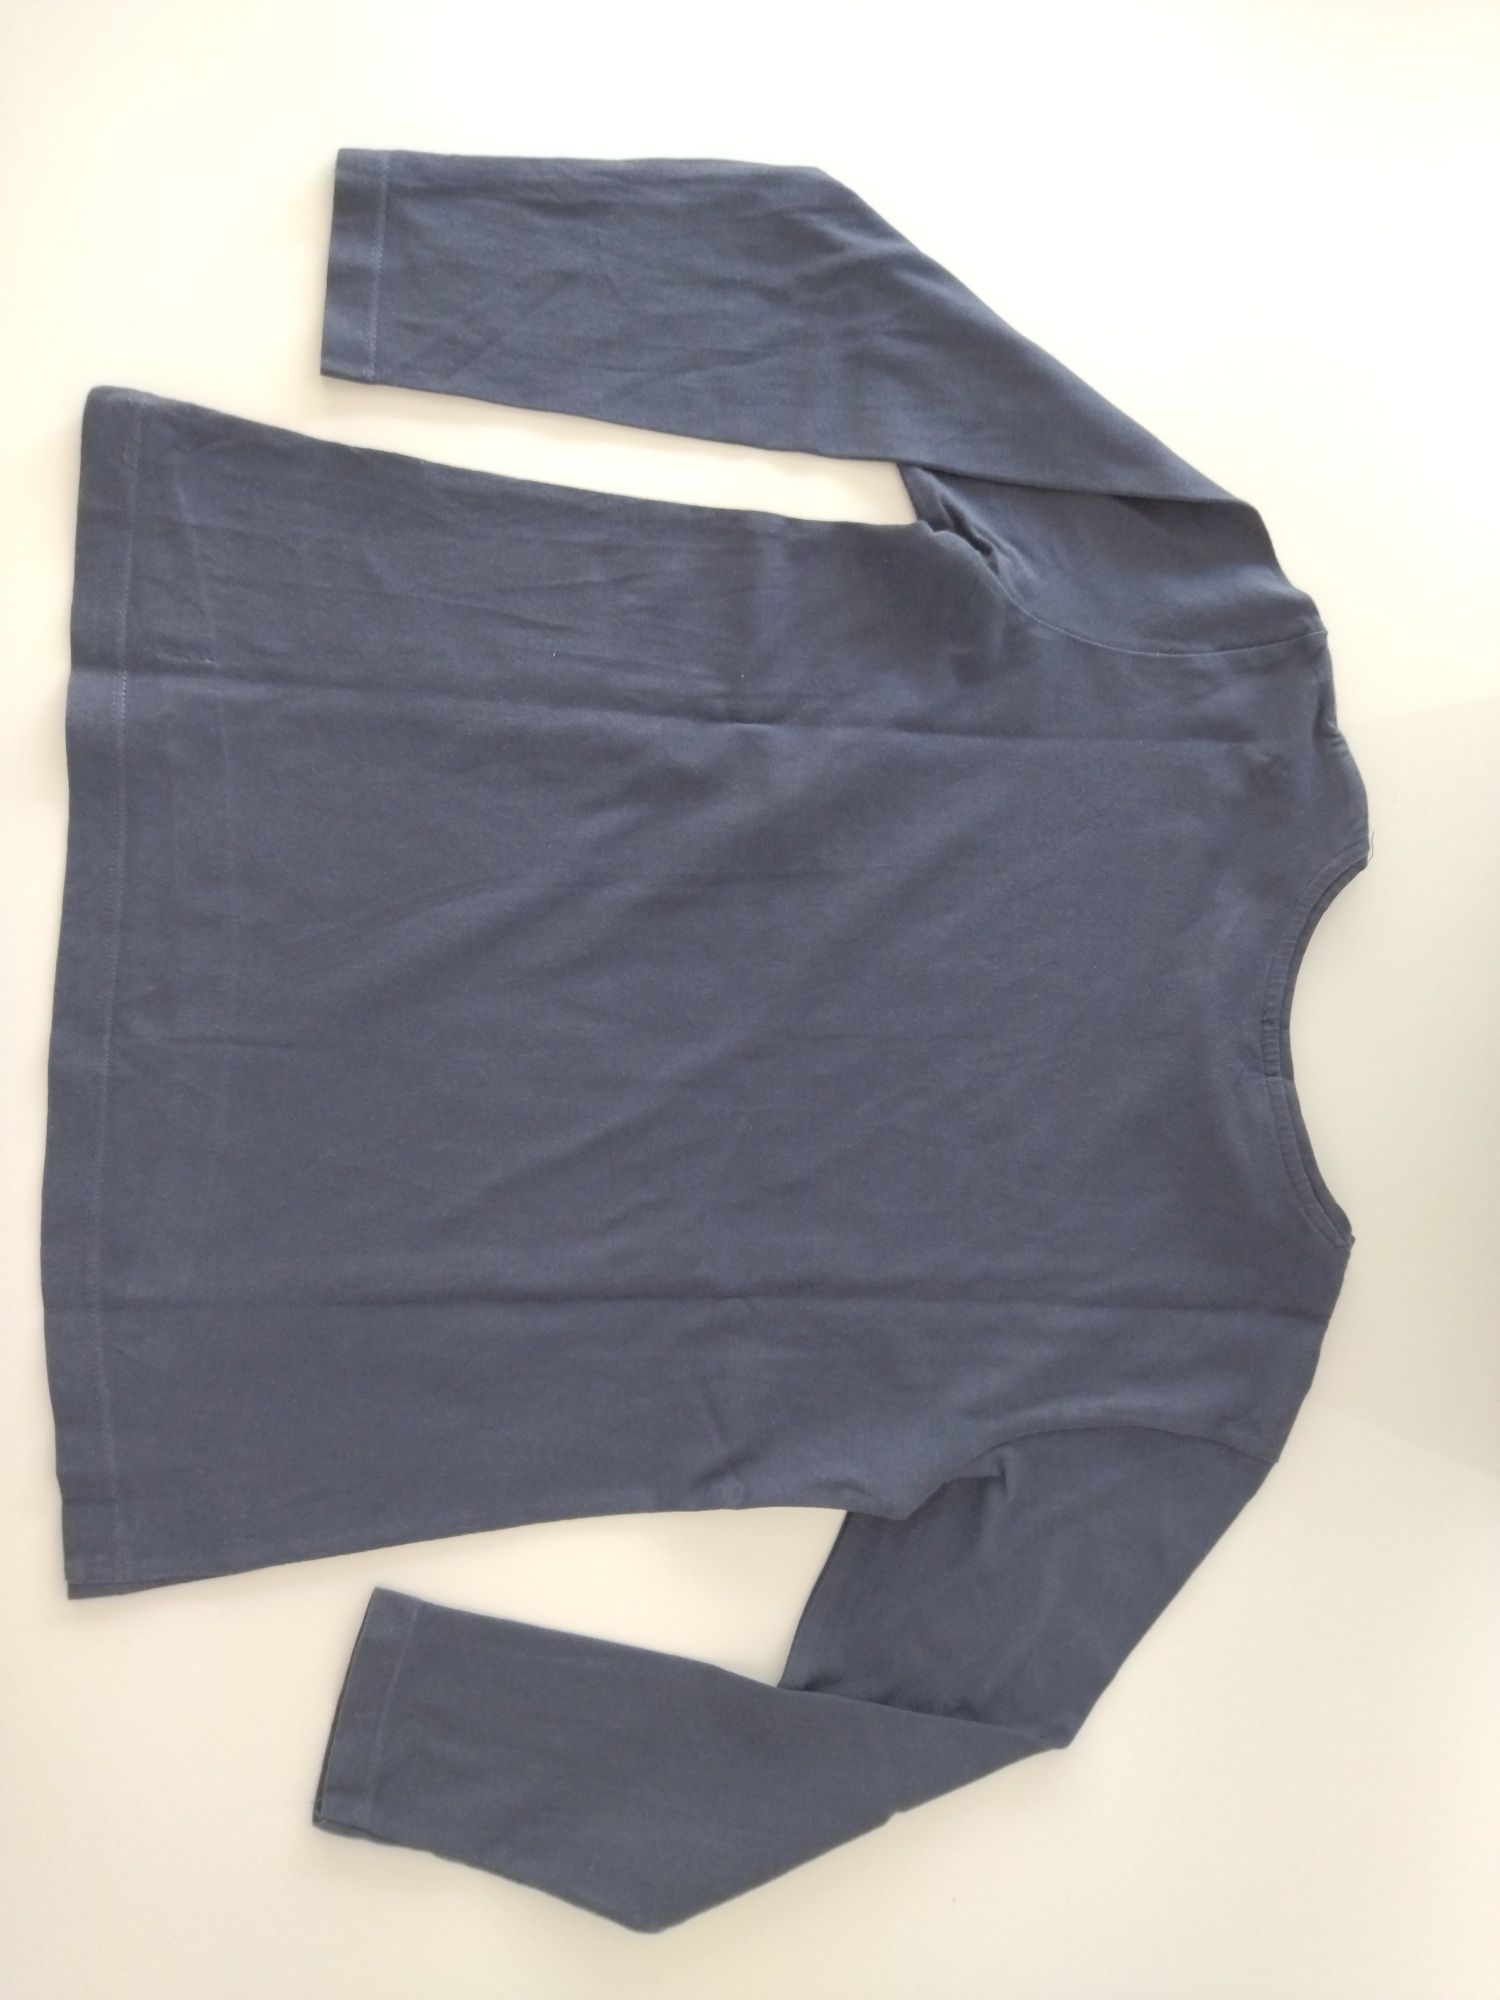 Camisola fina de manga comprida, azul marinho, tamanho 7-8 anos